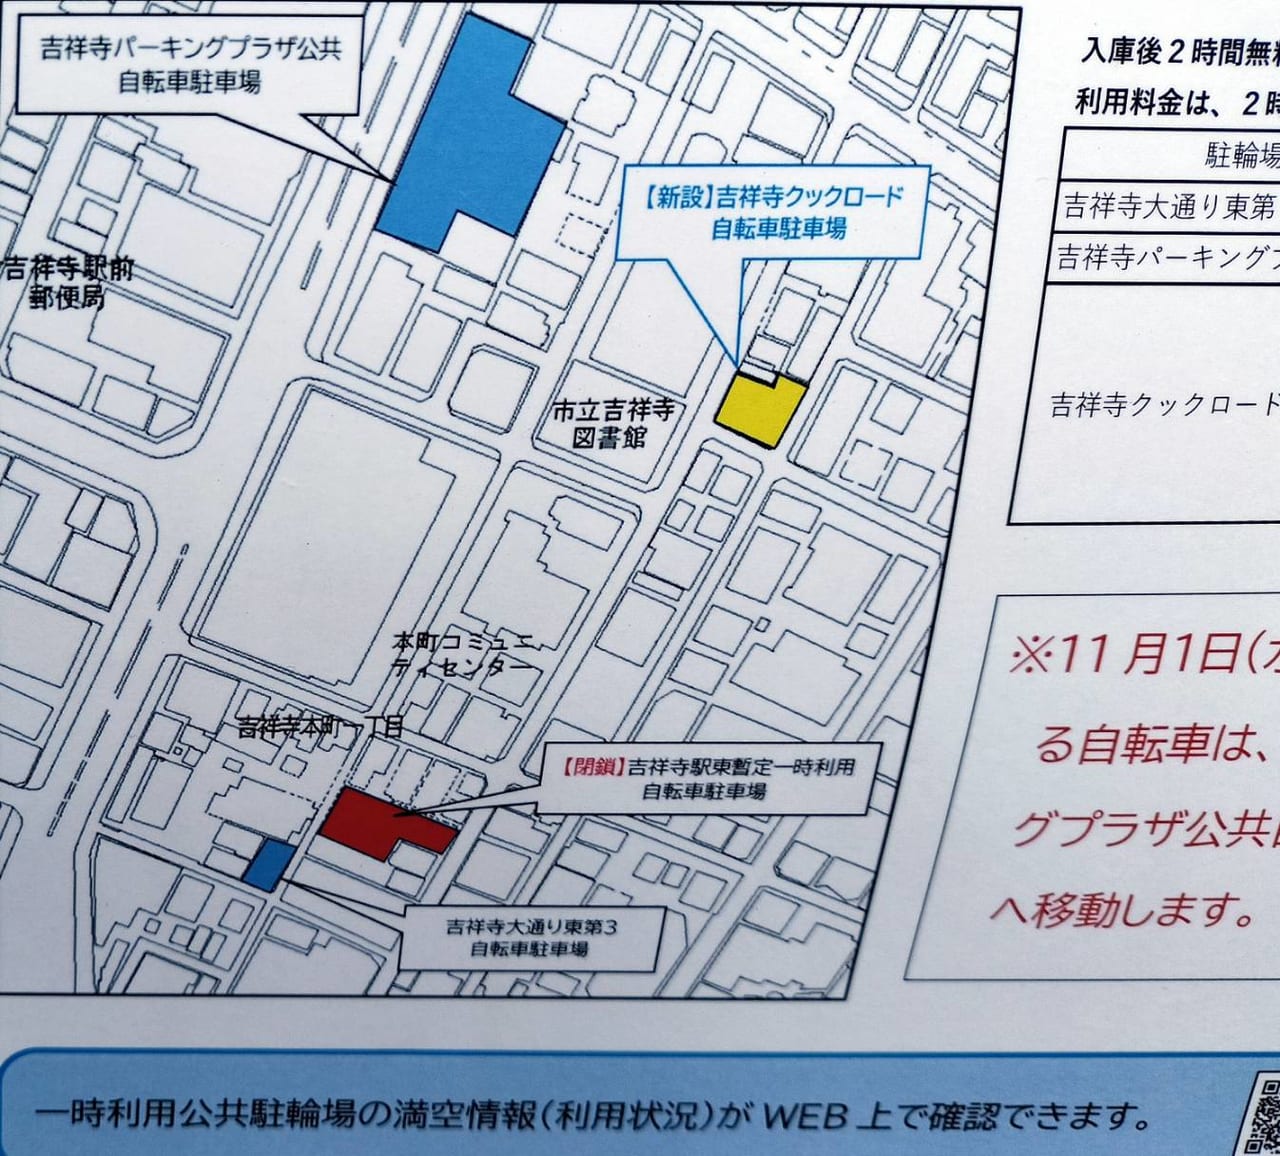 新たにできる吉祥寺クックロード自転車駐車場と吉祥寺駅東暫定一時利用自転車駐車場との位置関係を示す地図